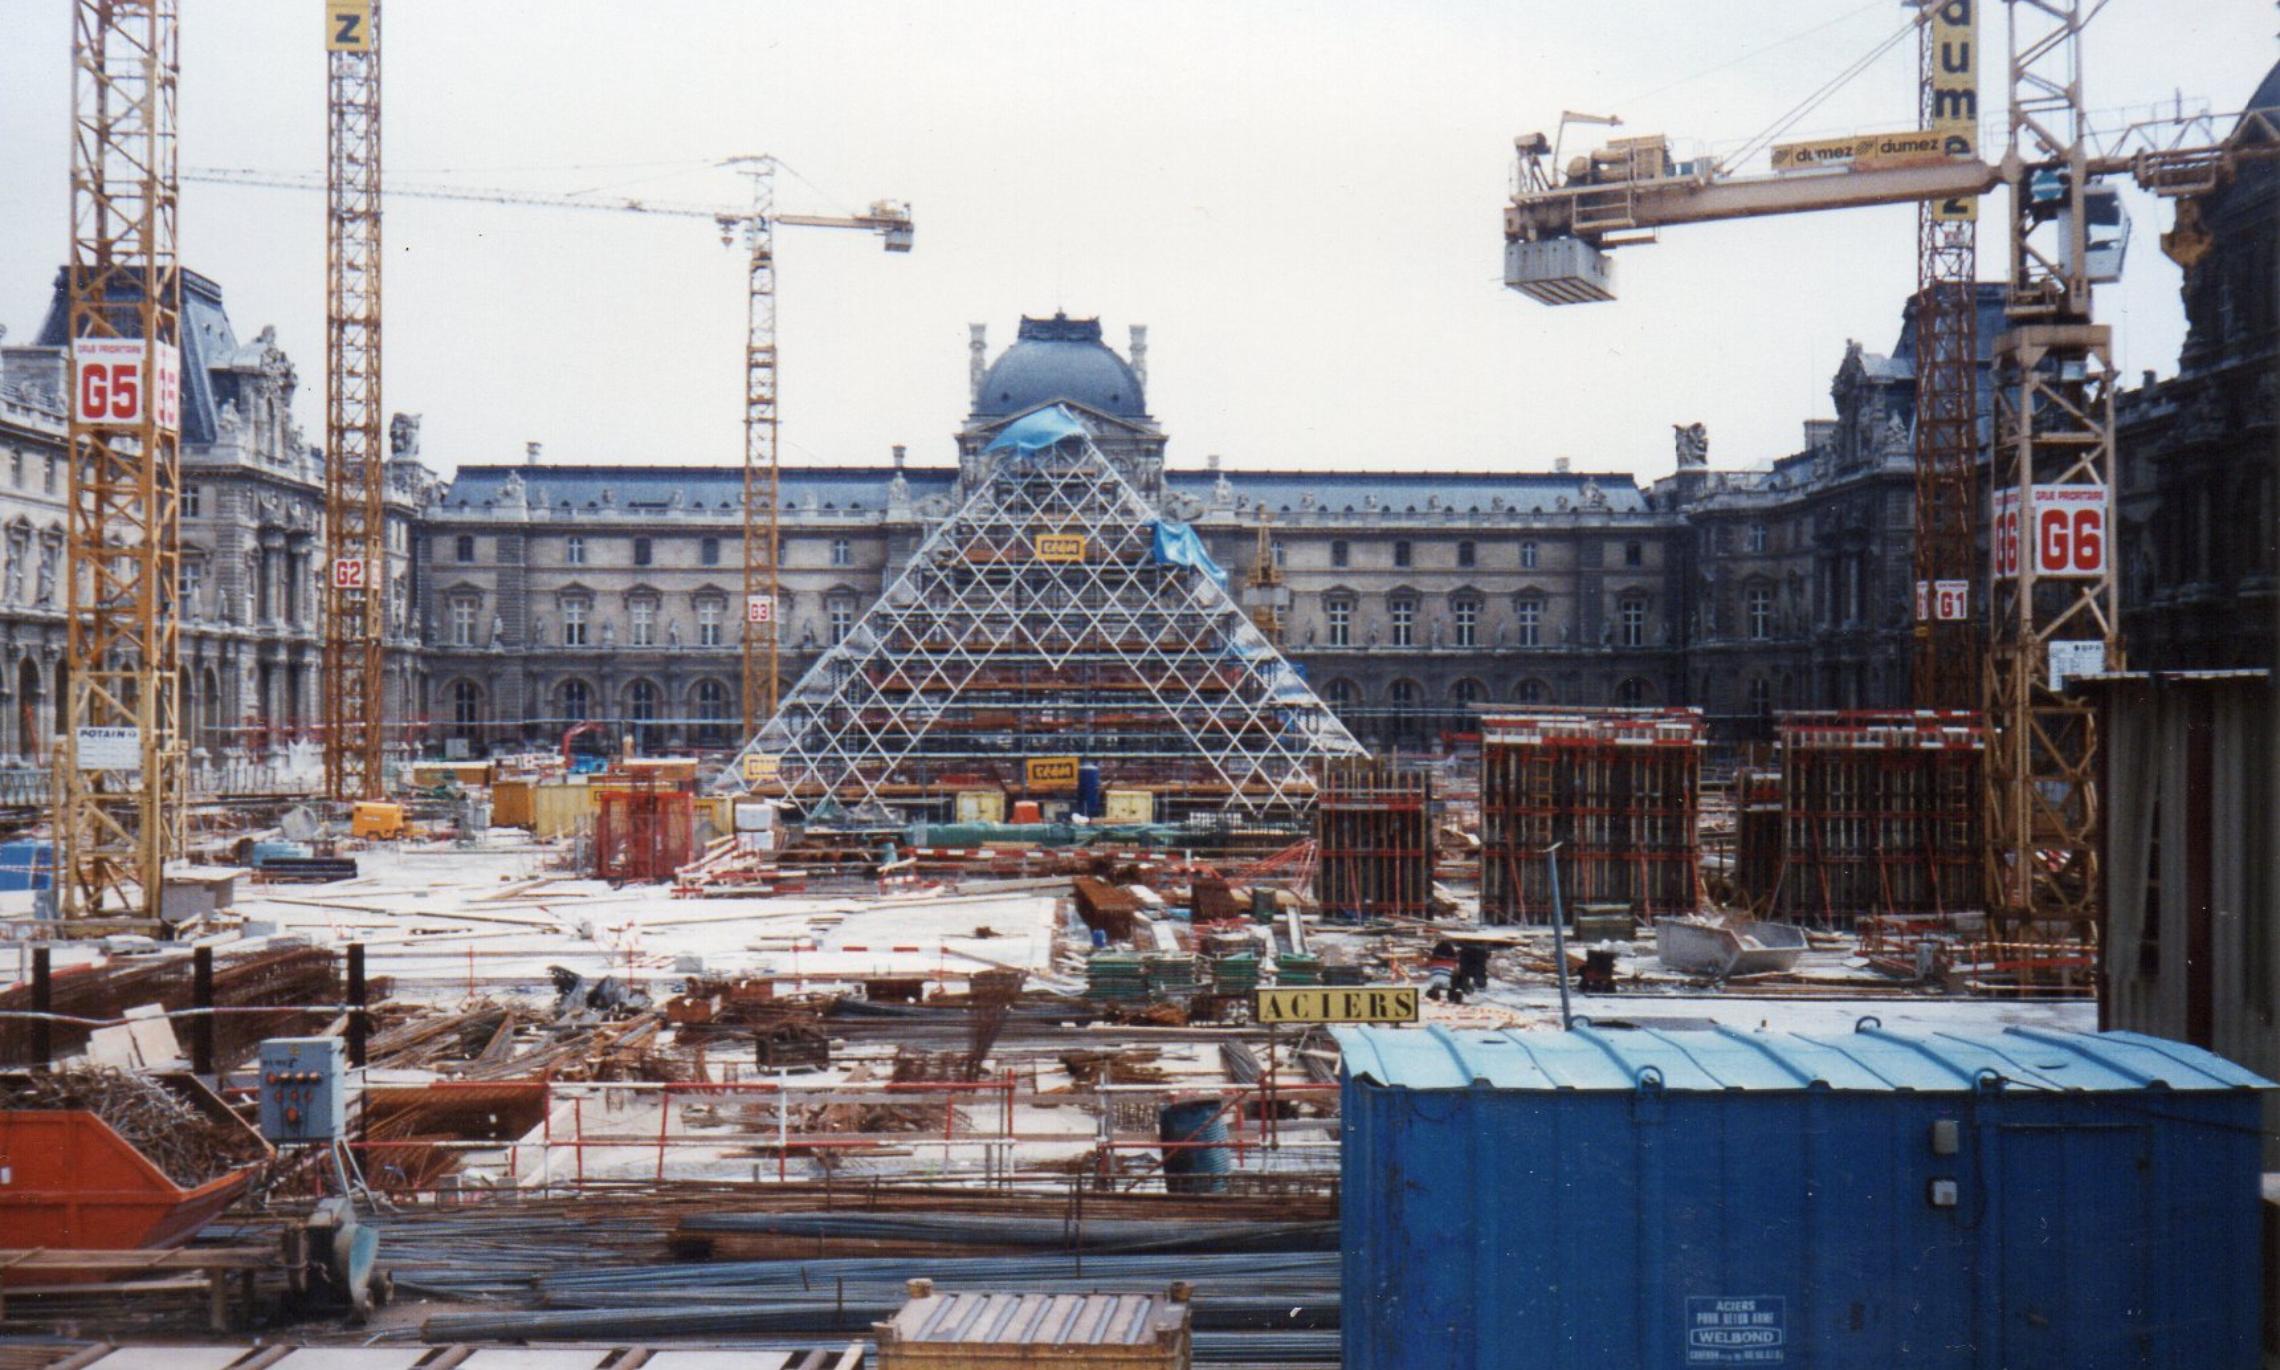 Руководителей Best Way обвинили в строительстве финансовой пирамиды. На фото Joseolgon строительство пирамиды в Лувре (CC BY-SA 3.0).